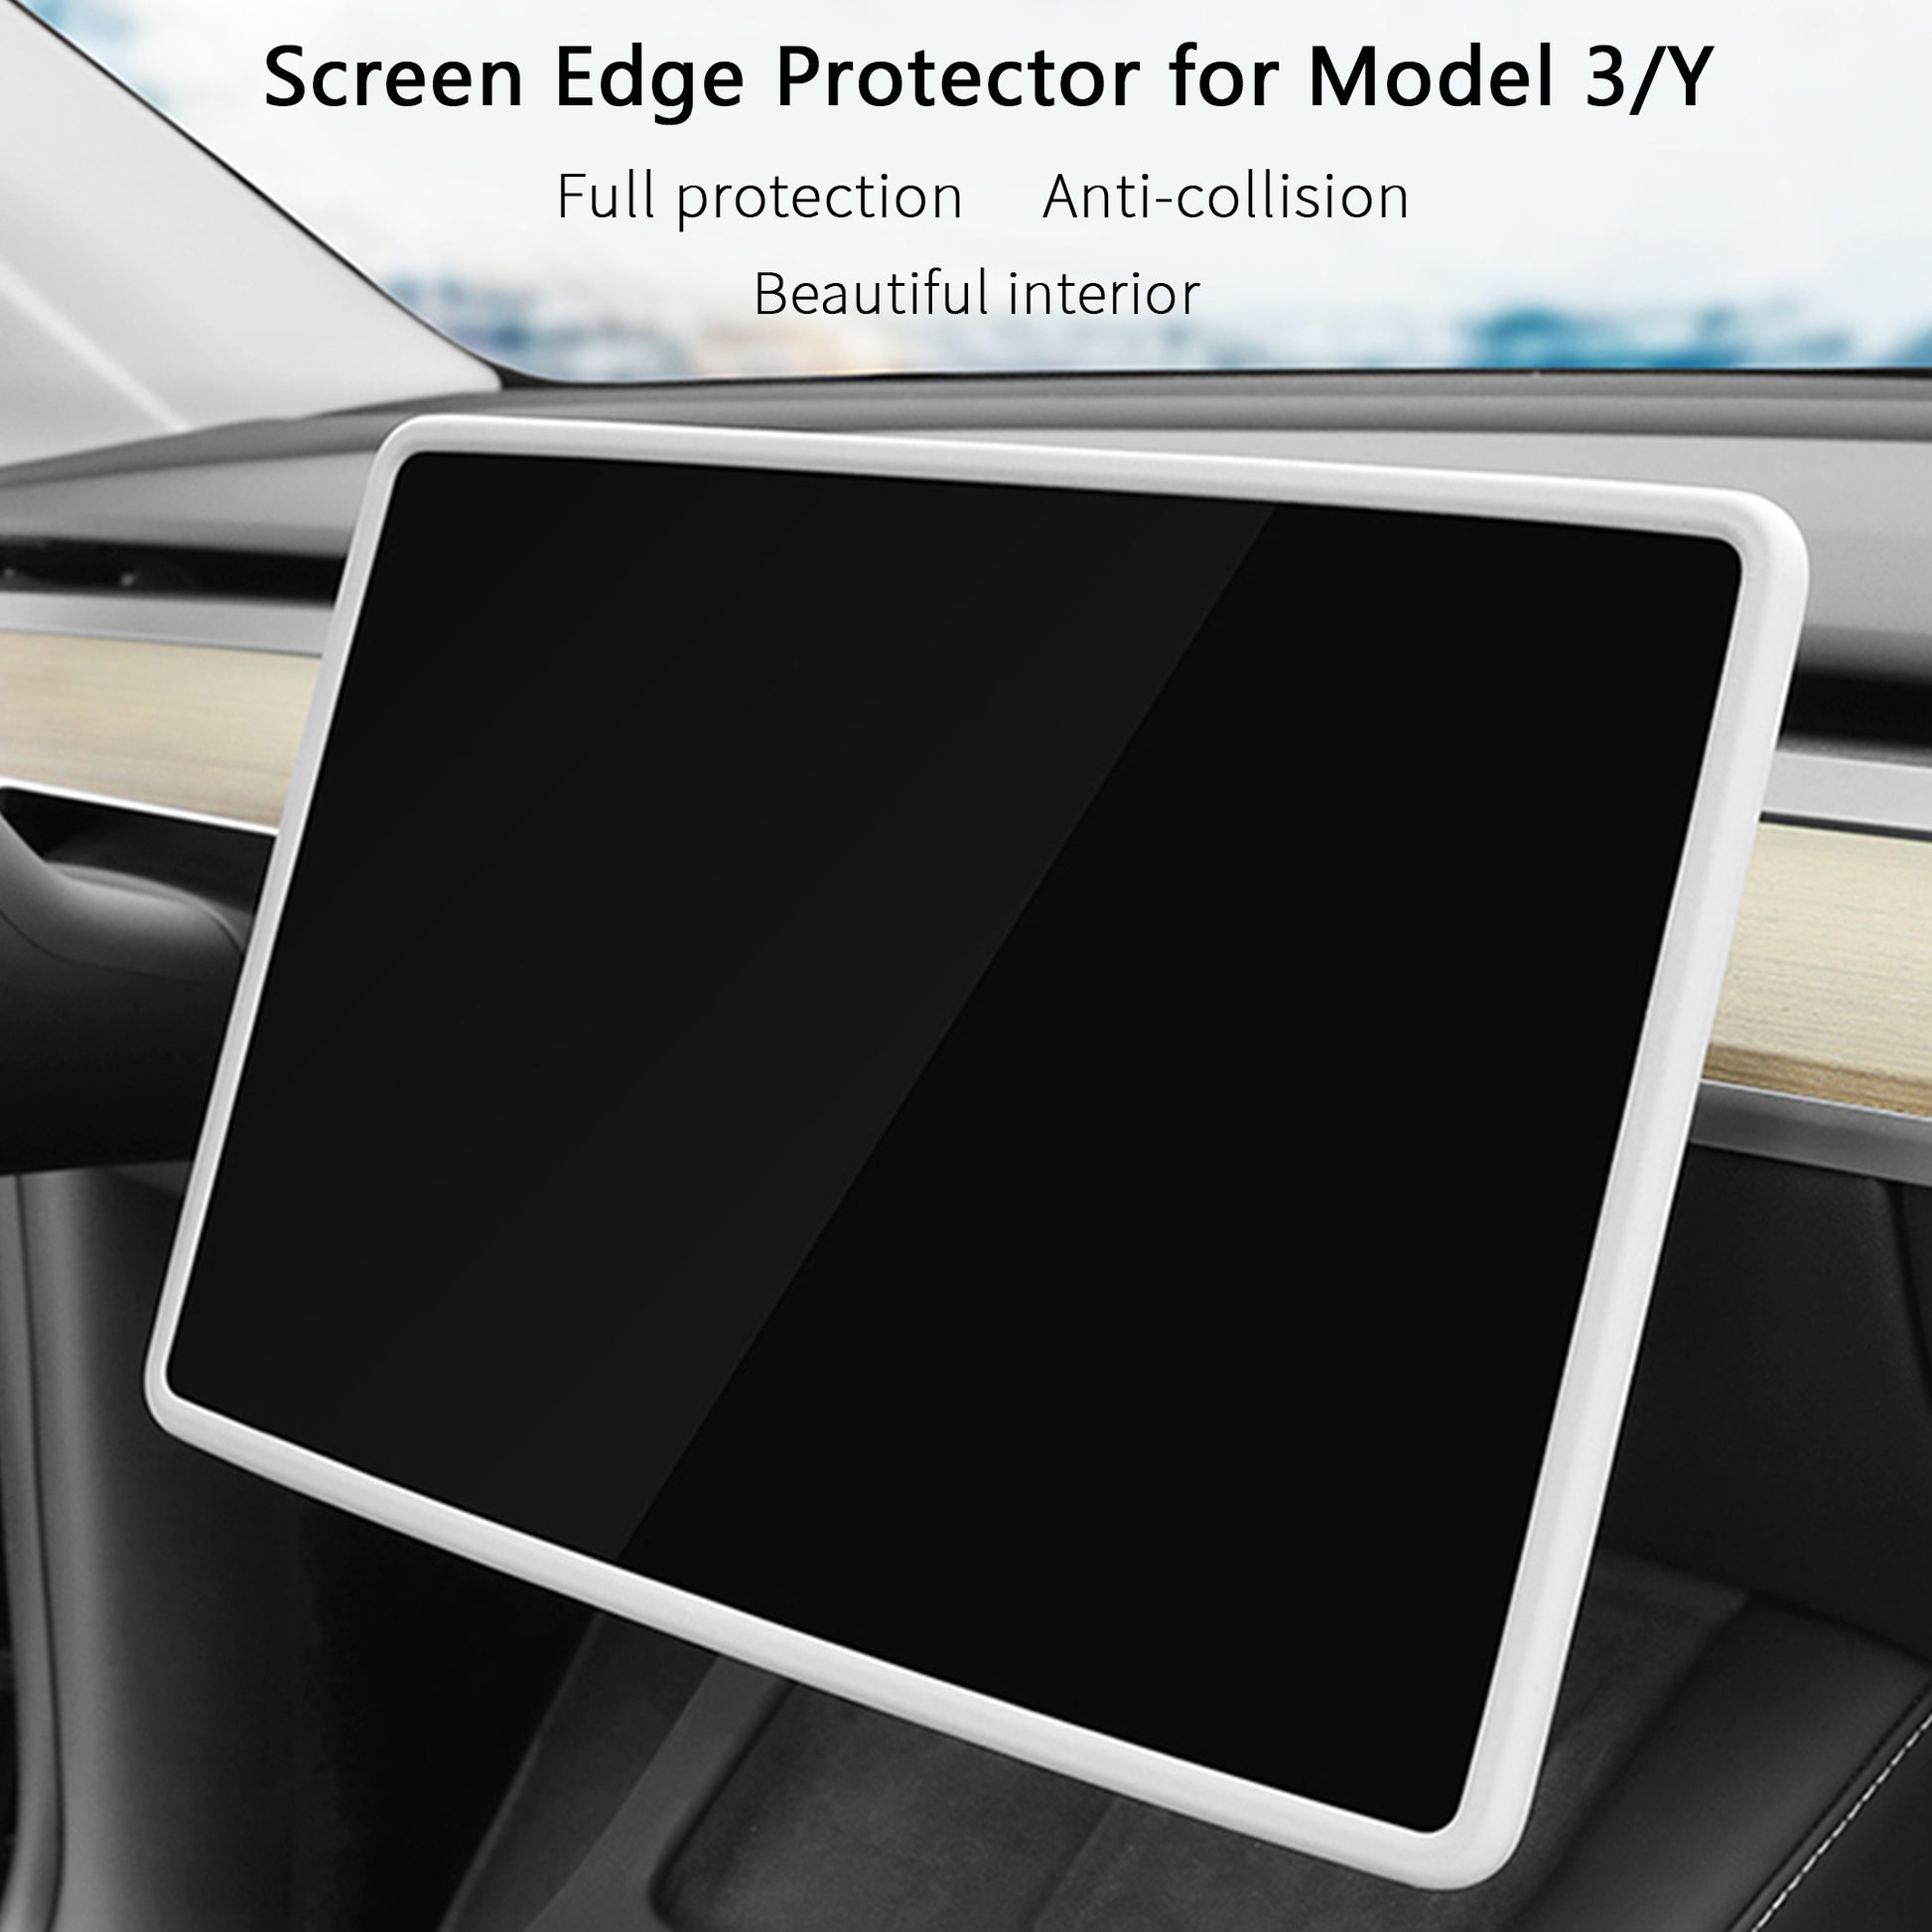 Couvercle protecteur de bord d'écran pour couvercle en silicone modèle Y/3  – Arcoche